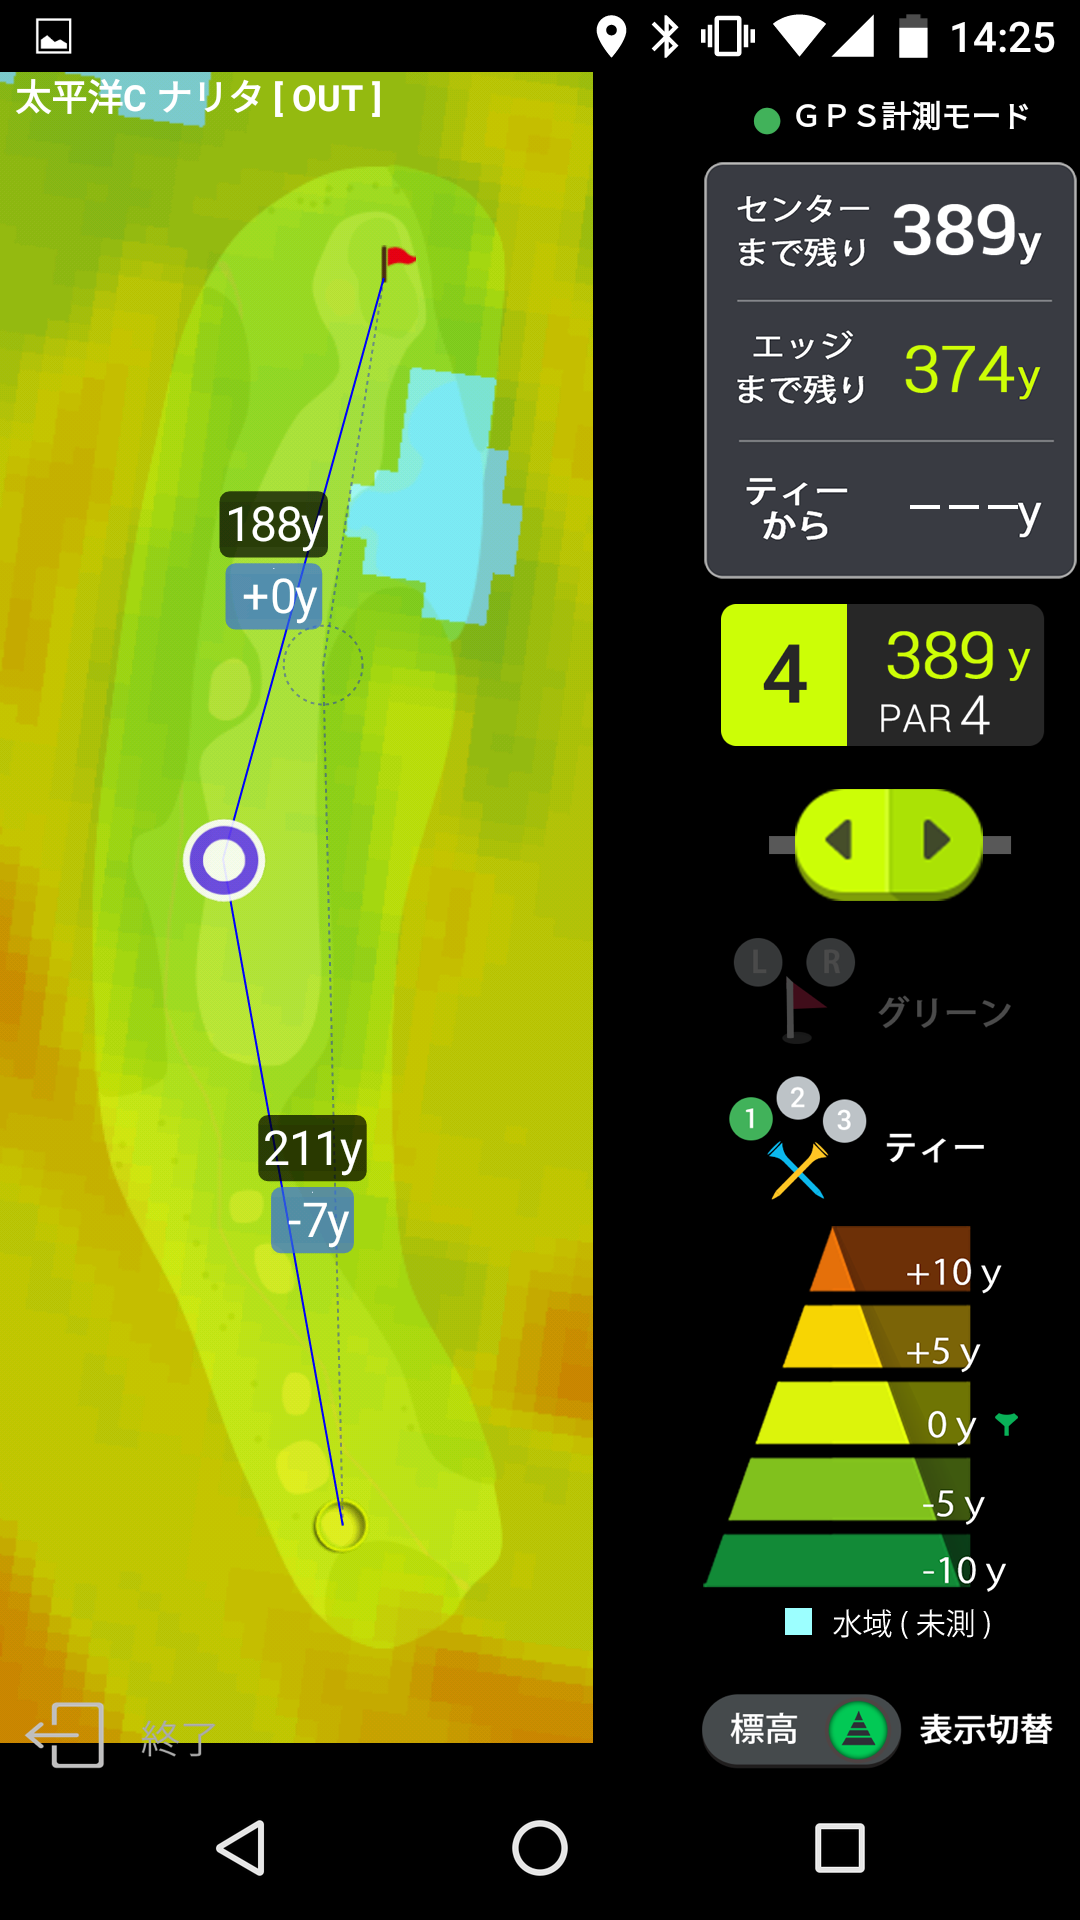 Android application ゴルフな日Su ゴルフナビ GPS 計測 screenshort